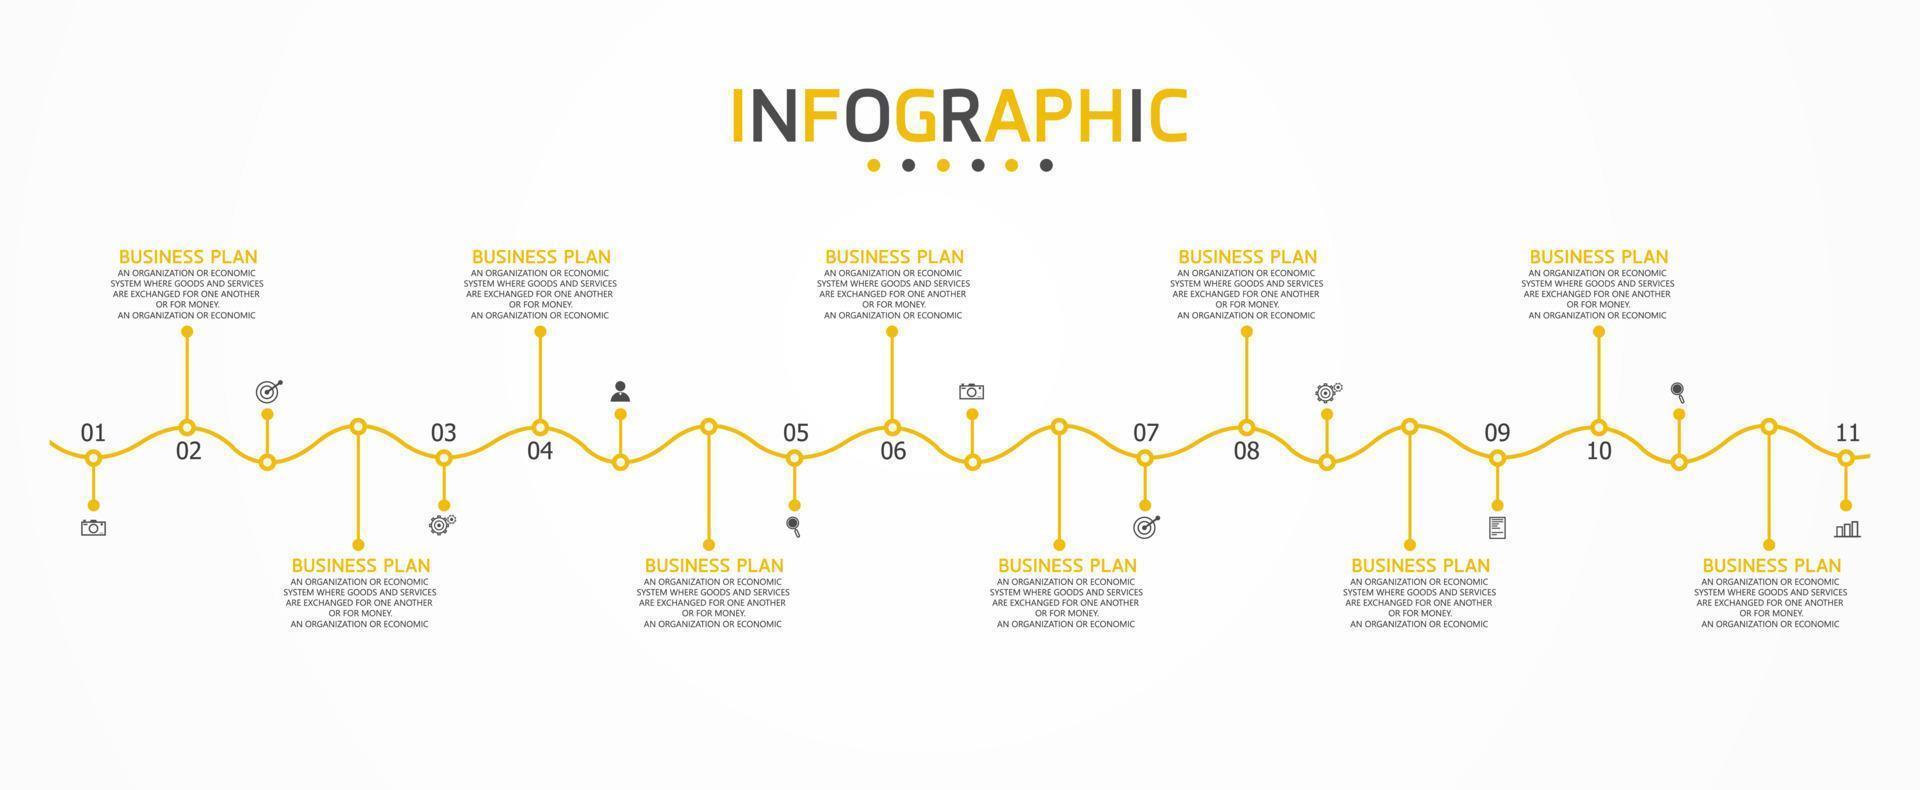 tidslinje infographic mall presentation affärsidé med ikoner, alternativ eller steg. infografik för affärsidéer kan användas för datagrafik, flödesscheman, webbplatser, banners. vektor